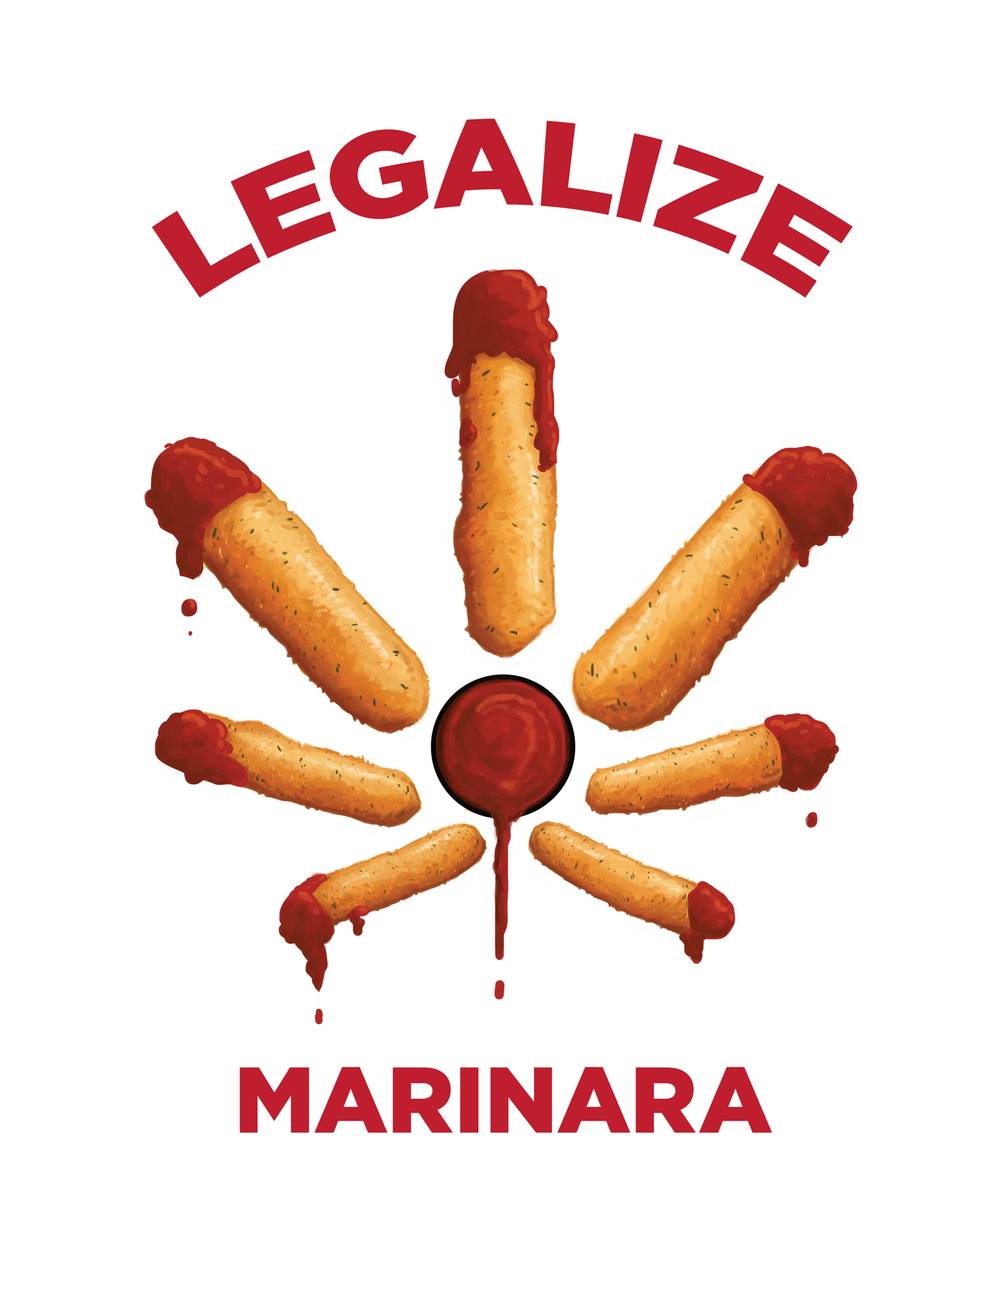 Cannabinthusiast | Dank Memes | Legalize Marinara